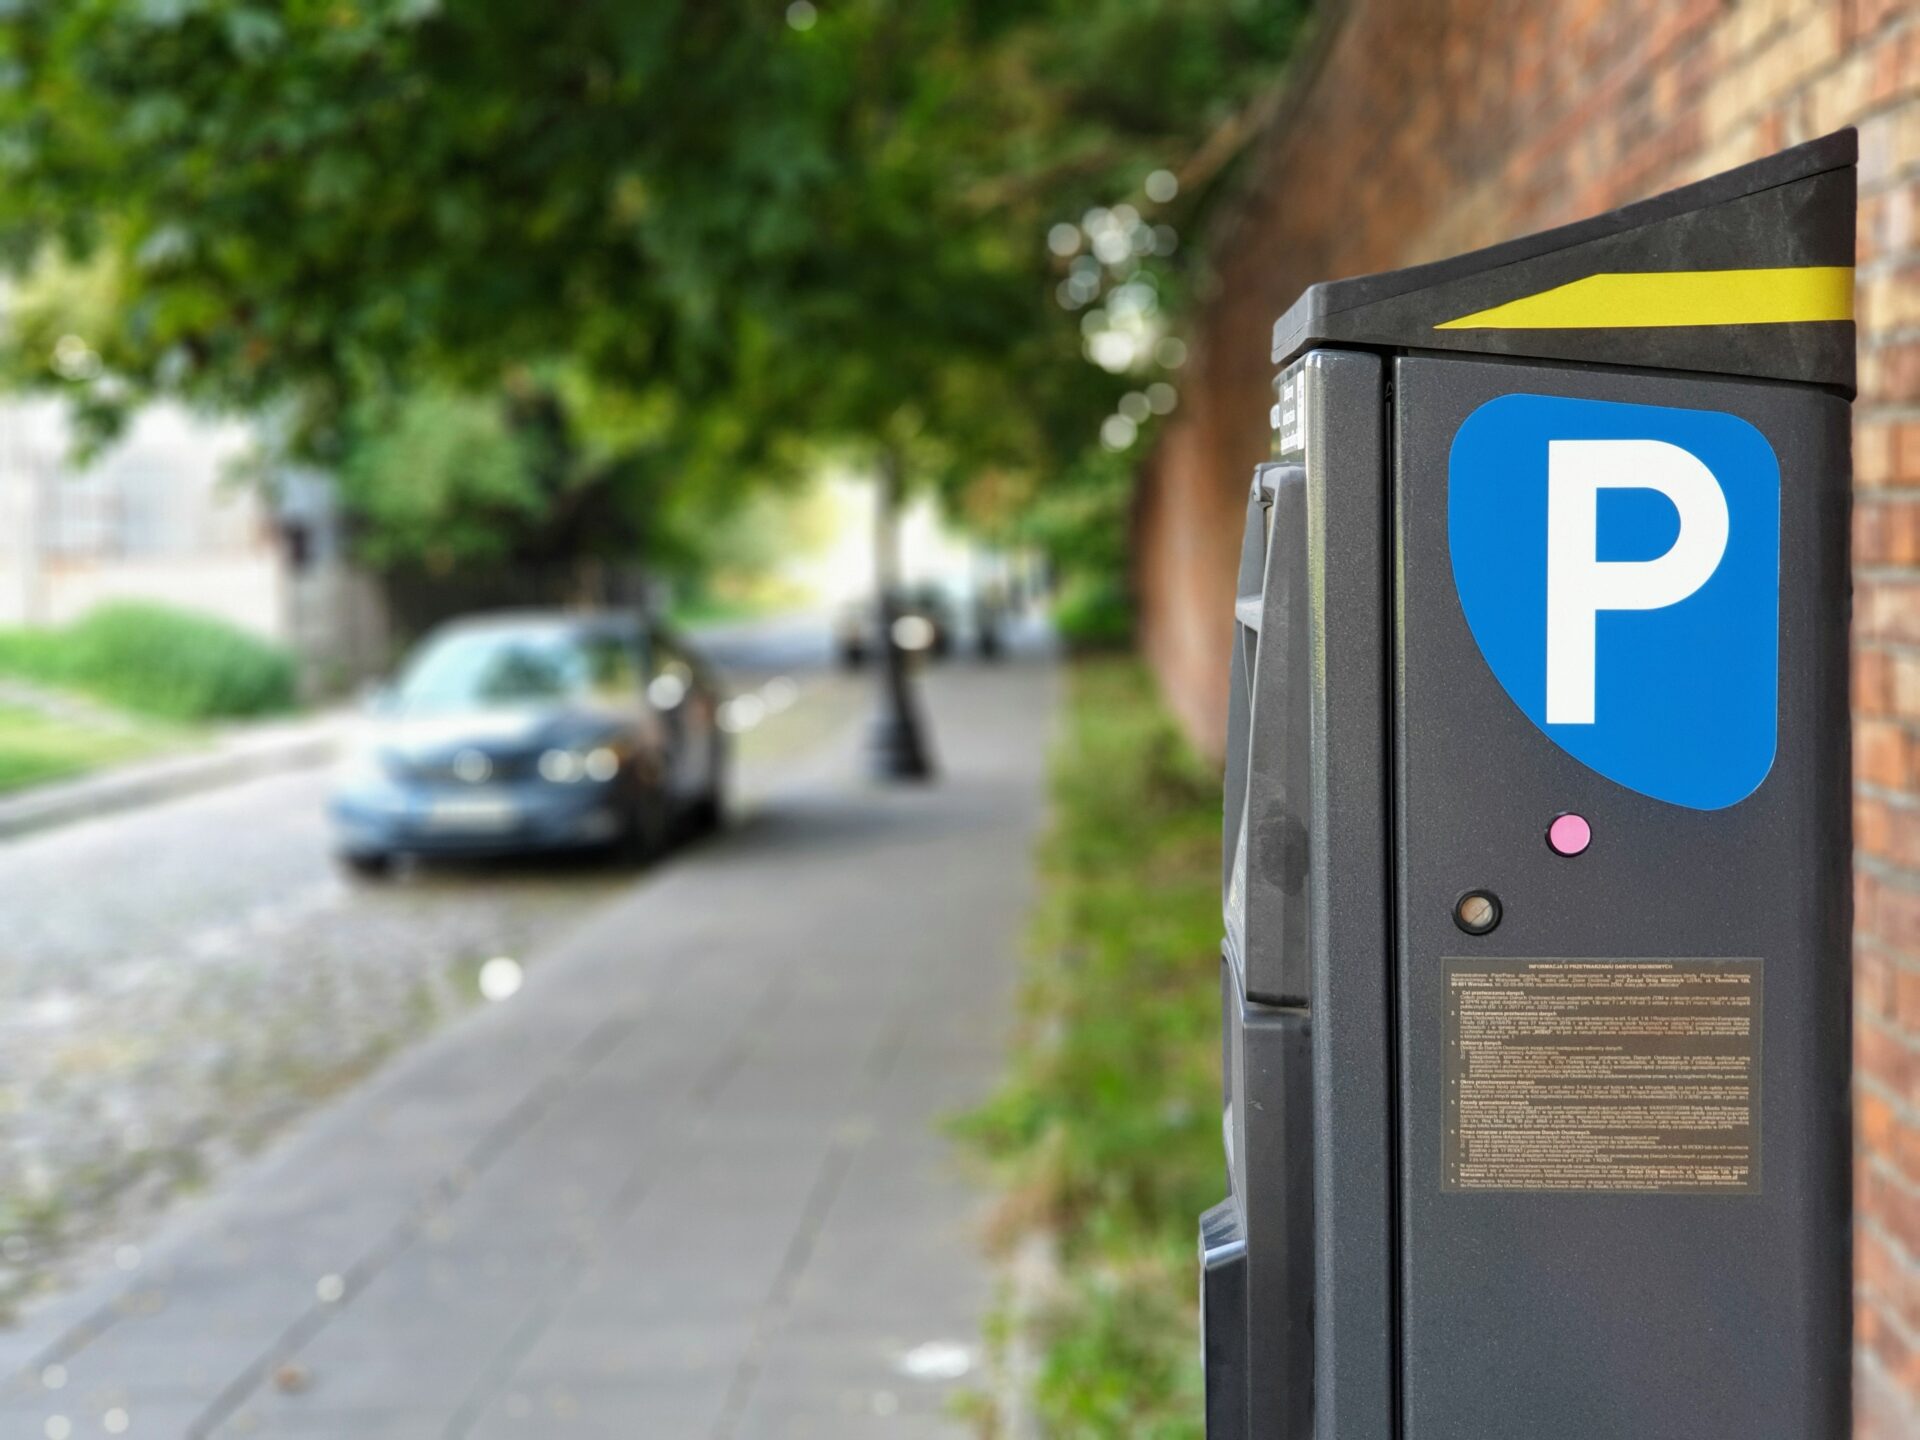 Posunutie termínu zákazu parkovania na chodníkoch počet parkovacích miest nerieši, vysvetľuje Drahovský